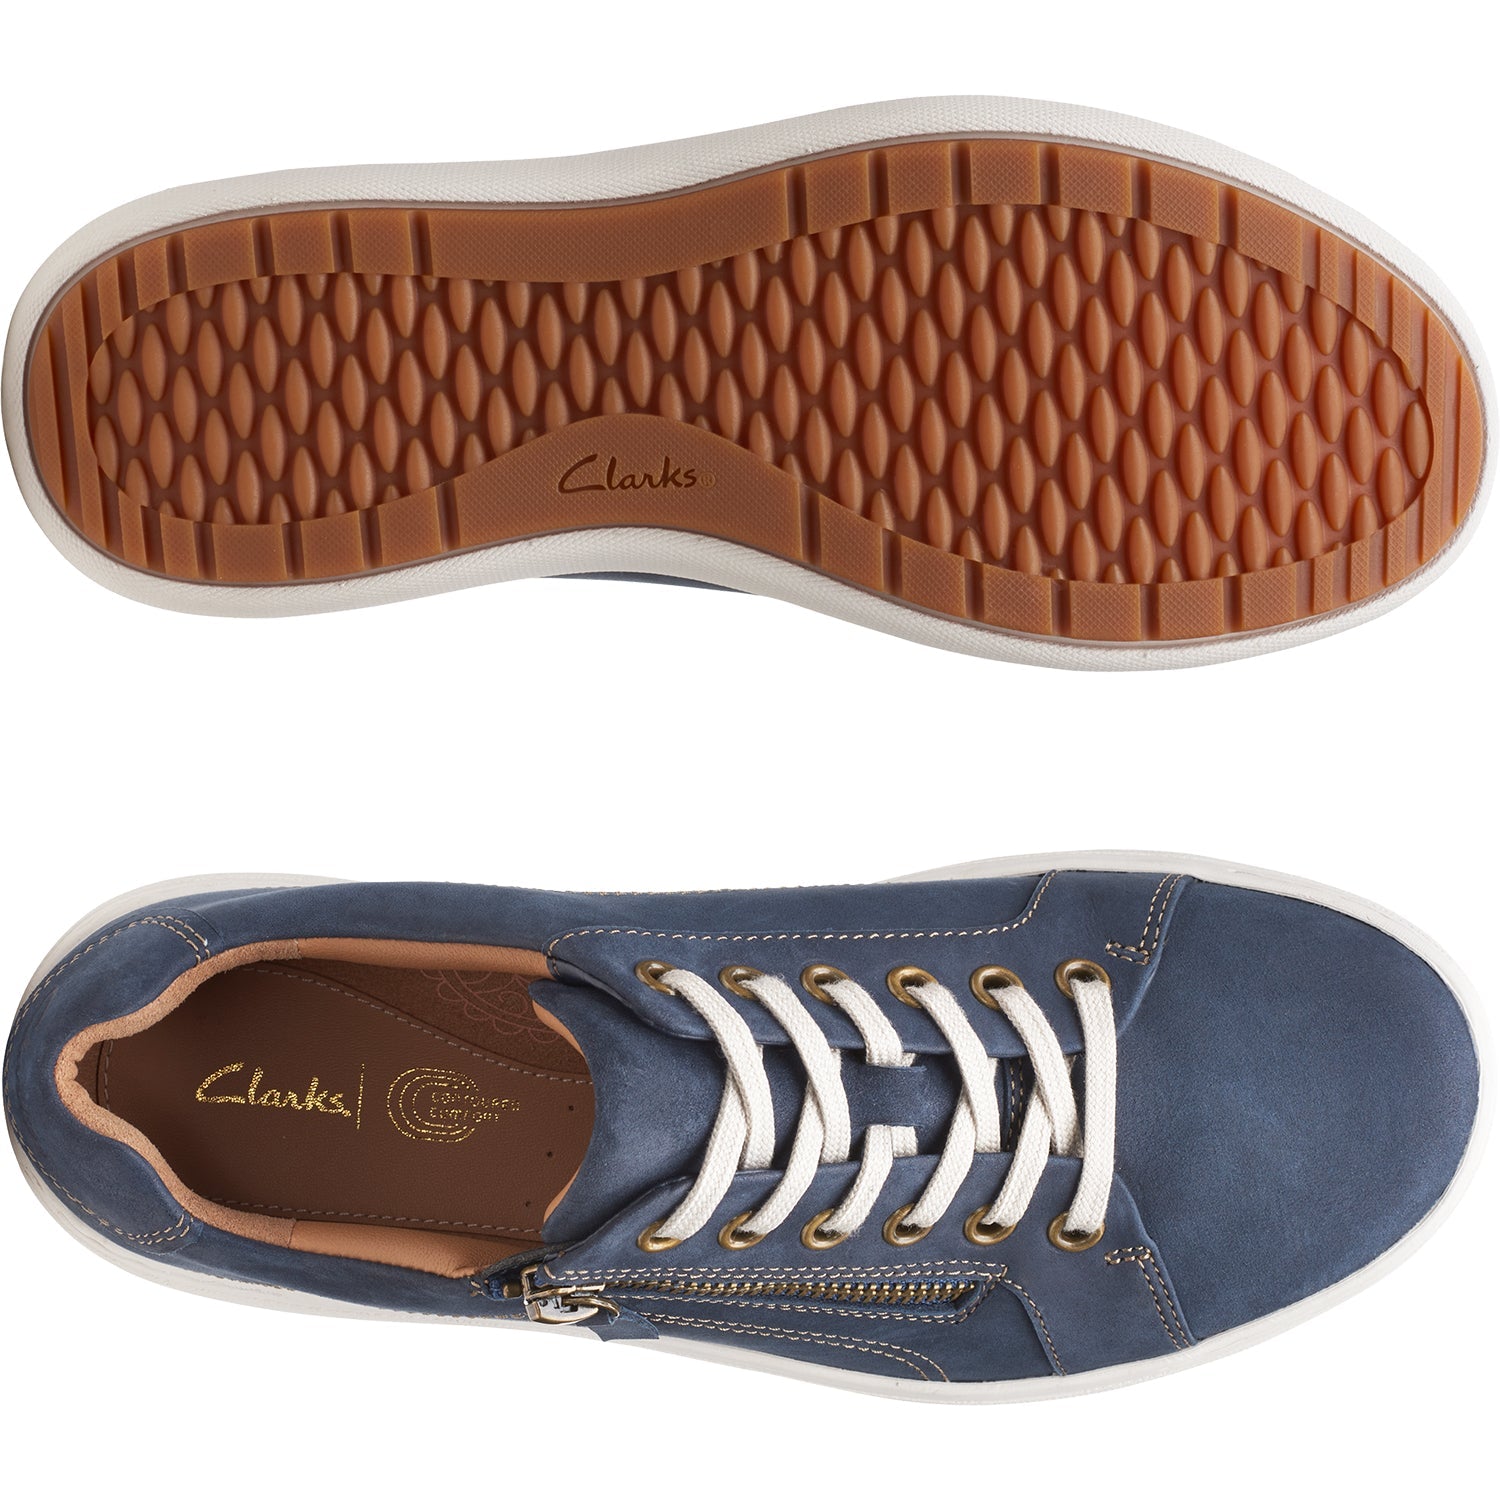 Clarks Nalle Lace Navy | Women's Walking Shoes | Footwear etc.